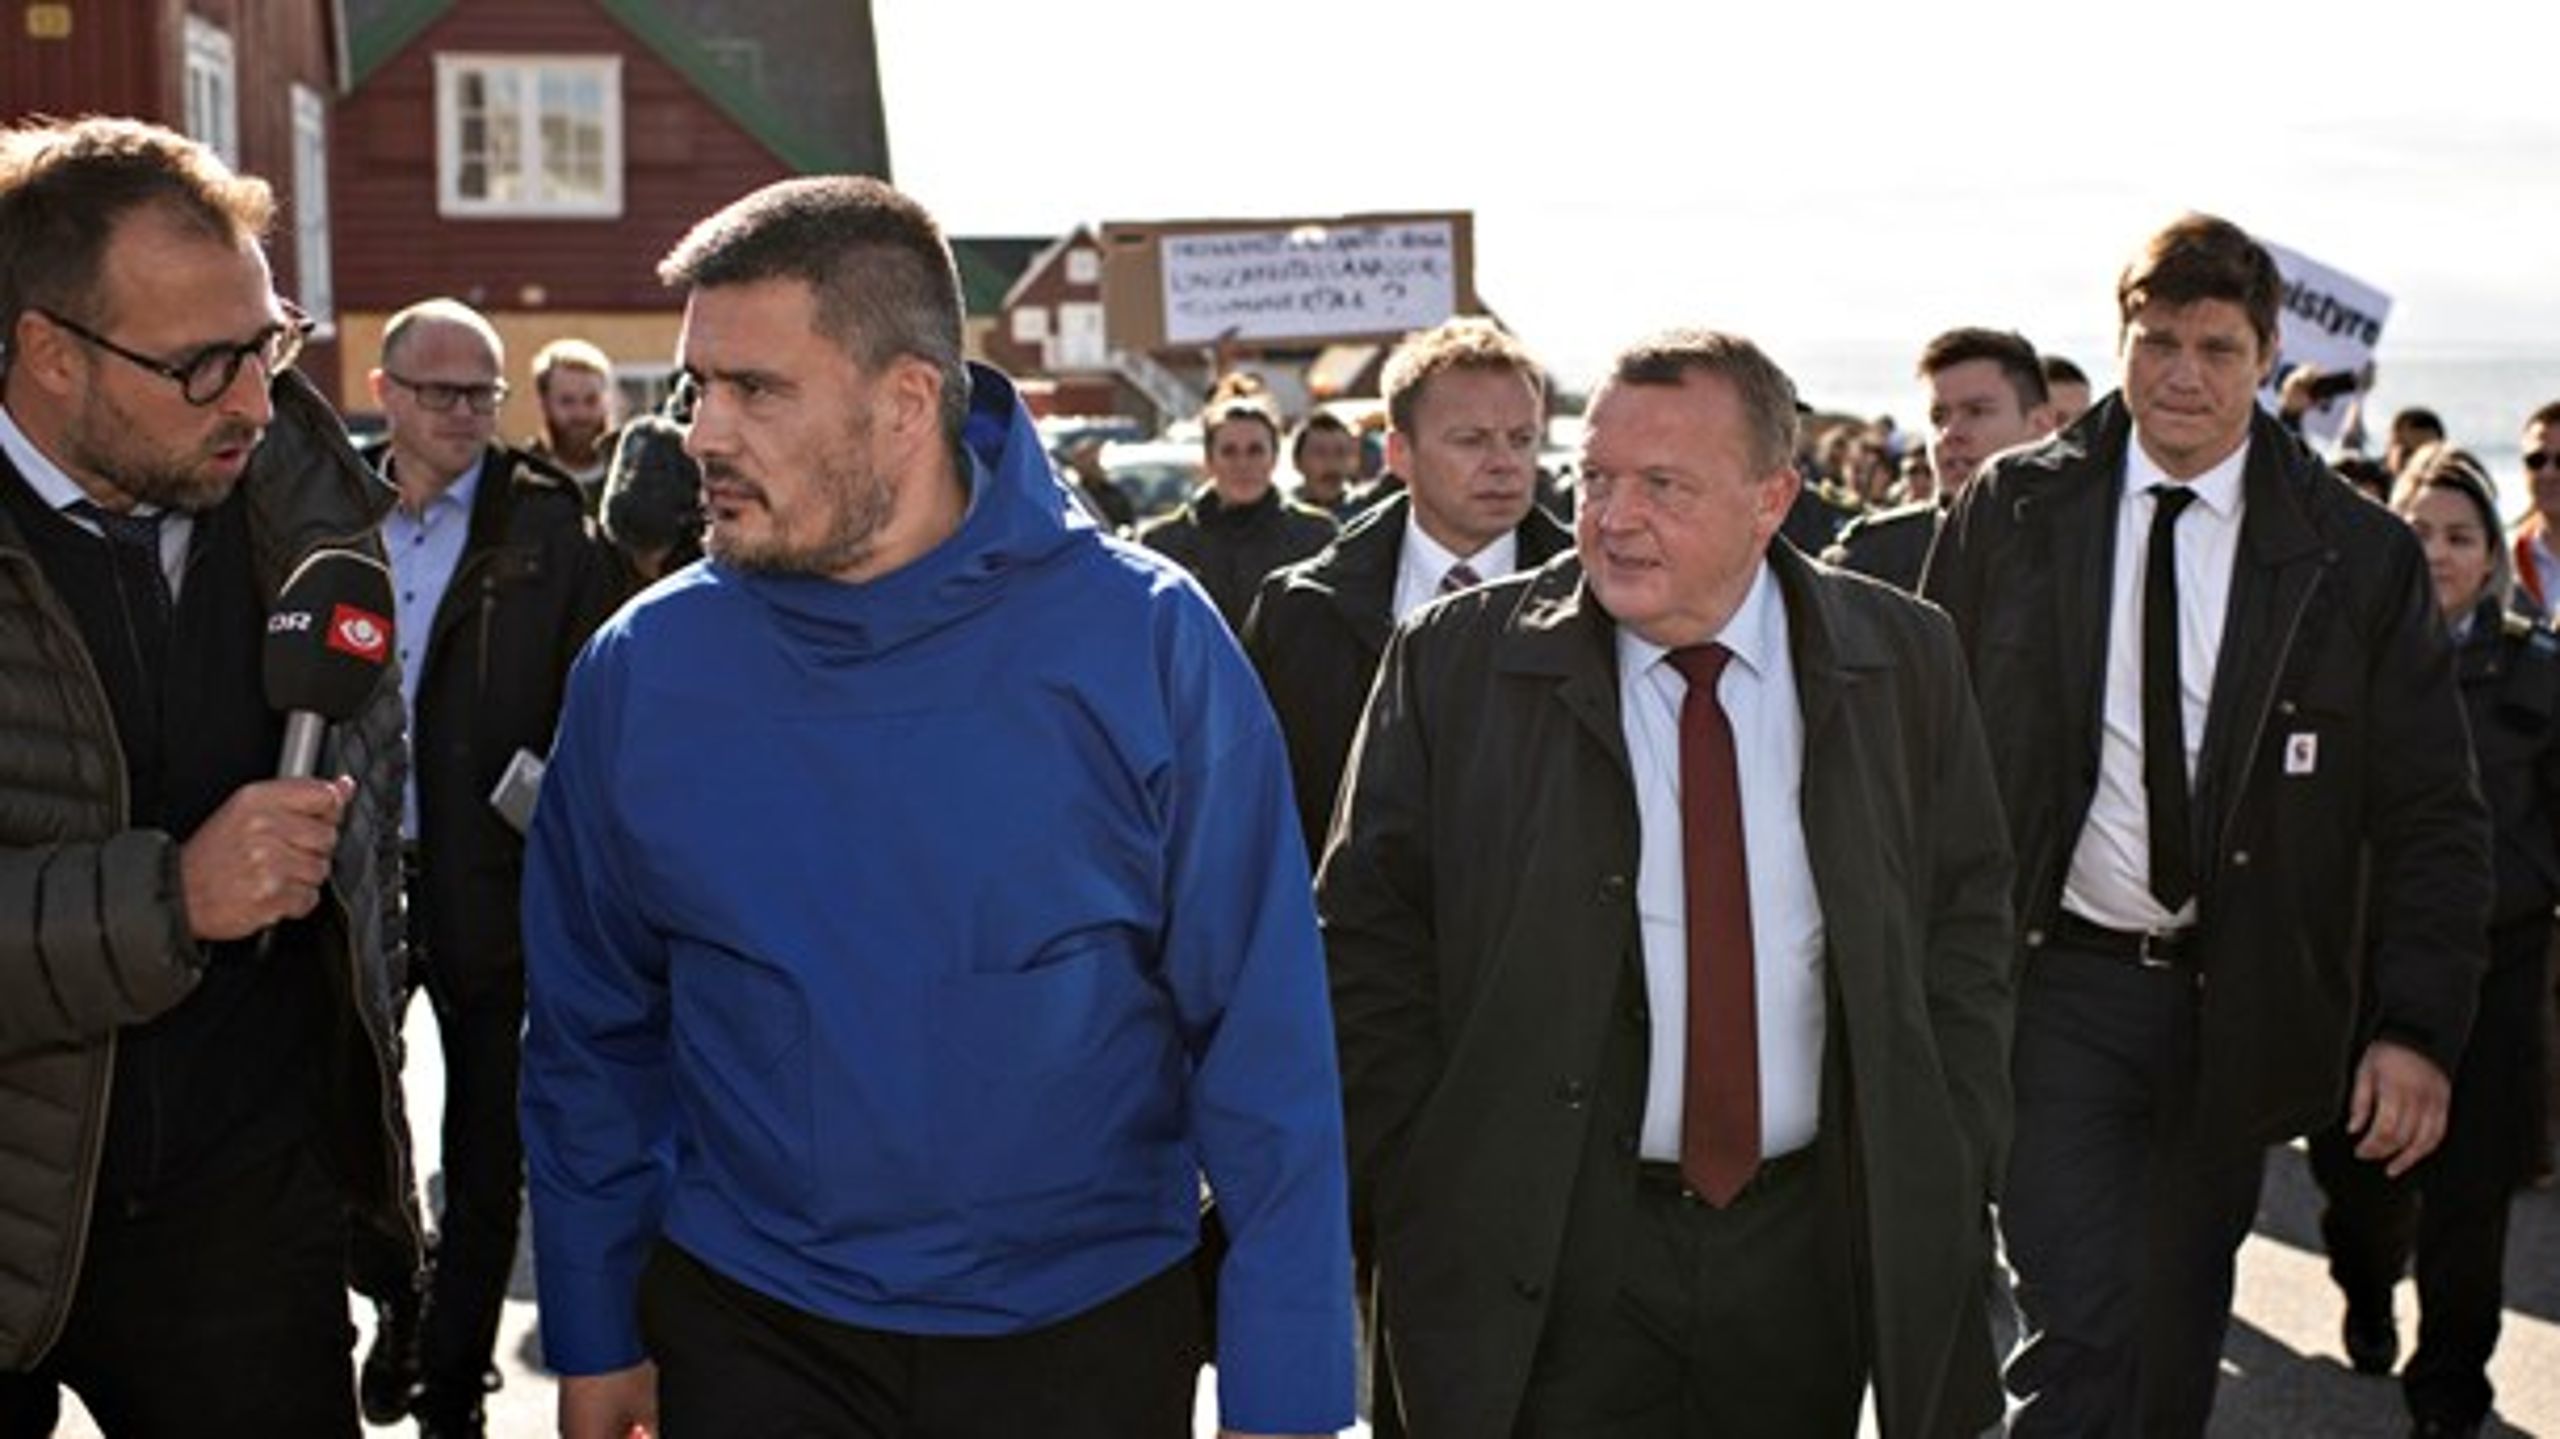 Landsstyreformand Kim Kielsen (t.v.) og
statsminister Lars Løkke Rasmussen (t.h.) mødtes med demonstranter
på gaden i Nuuk efter underskrivelse af lufthavnsaftale.<br>